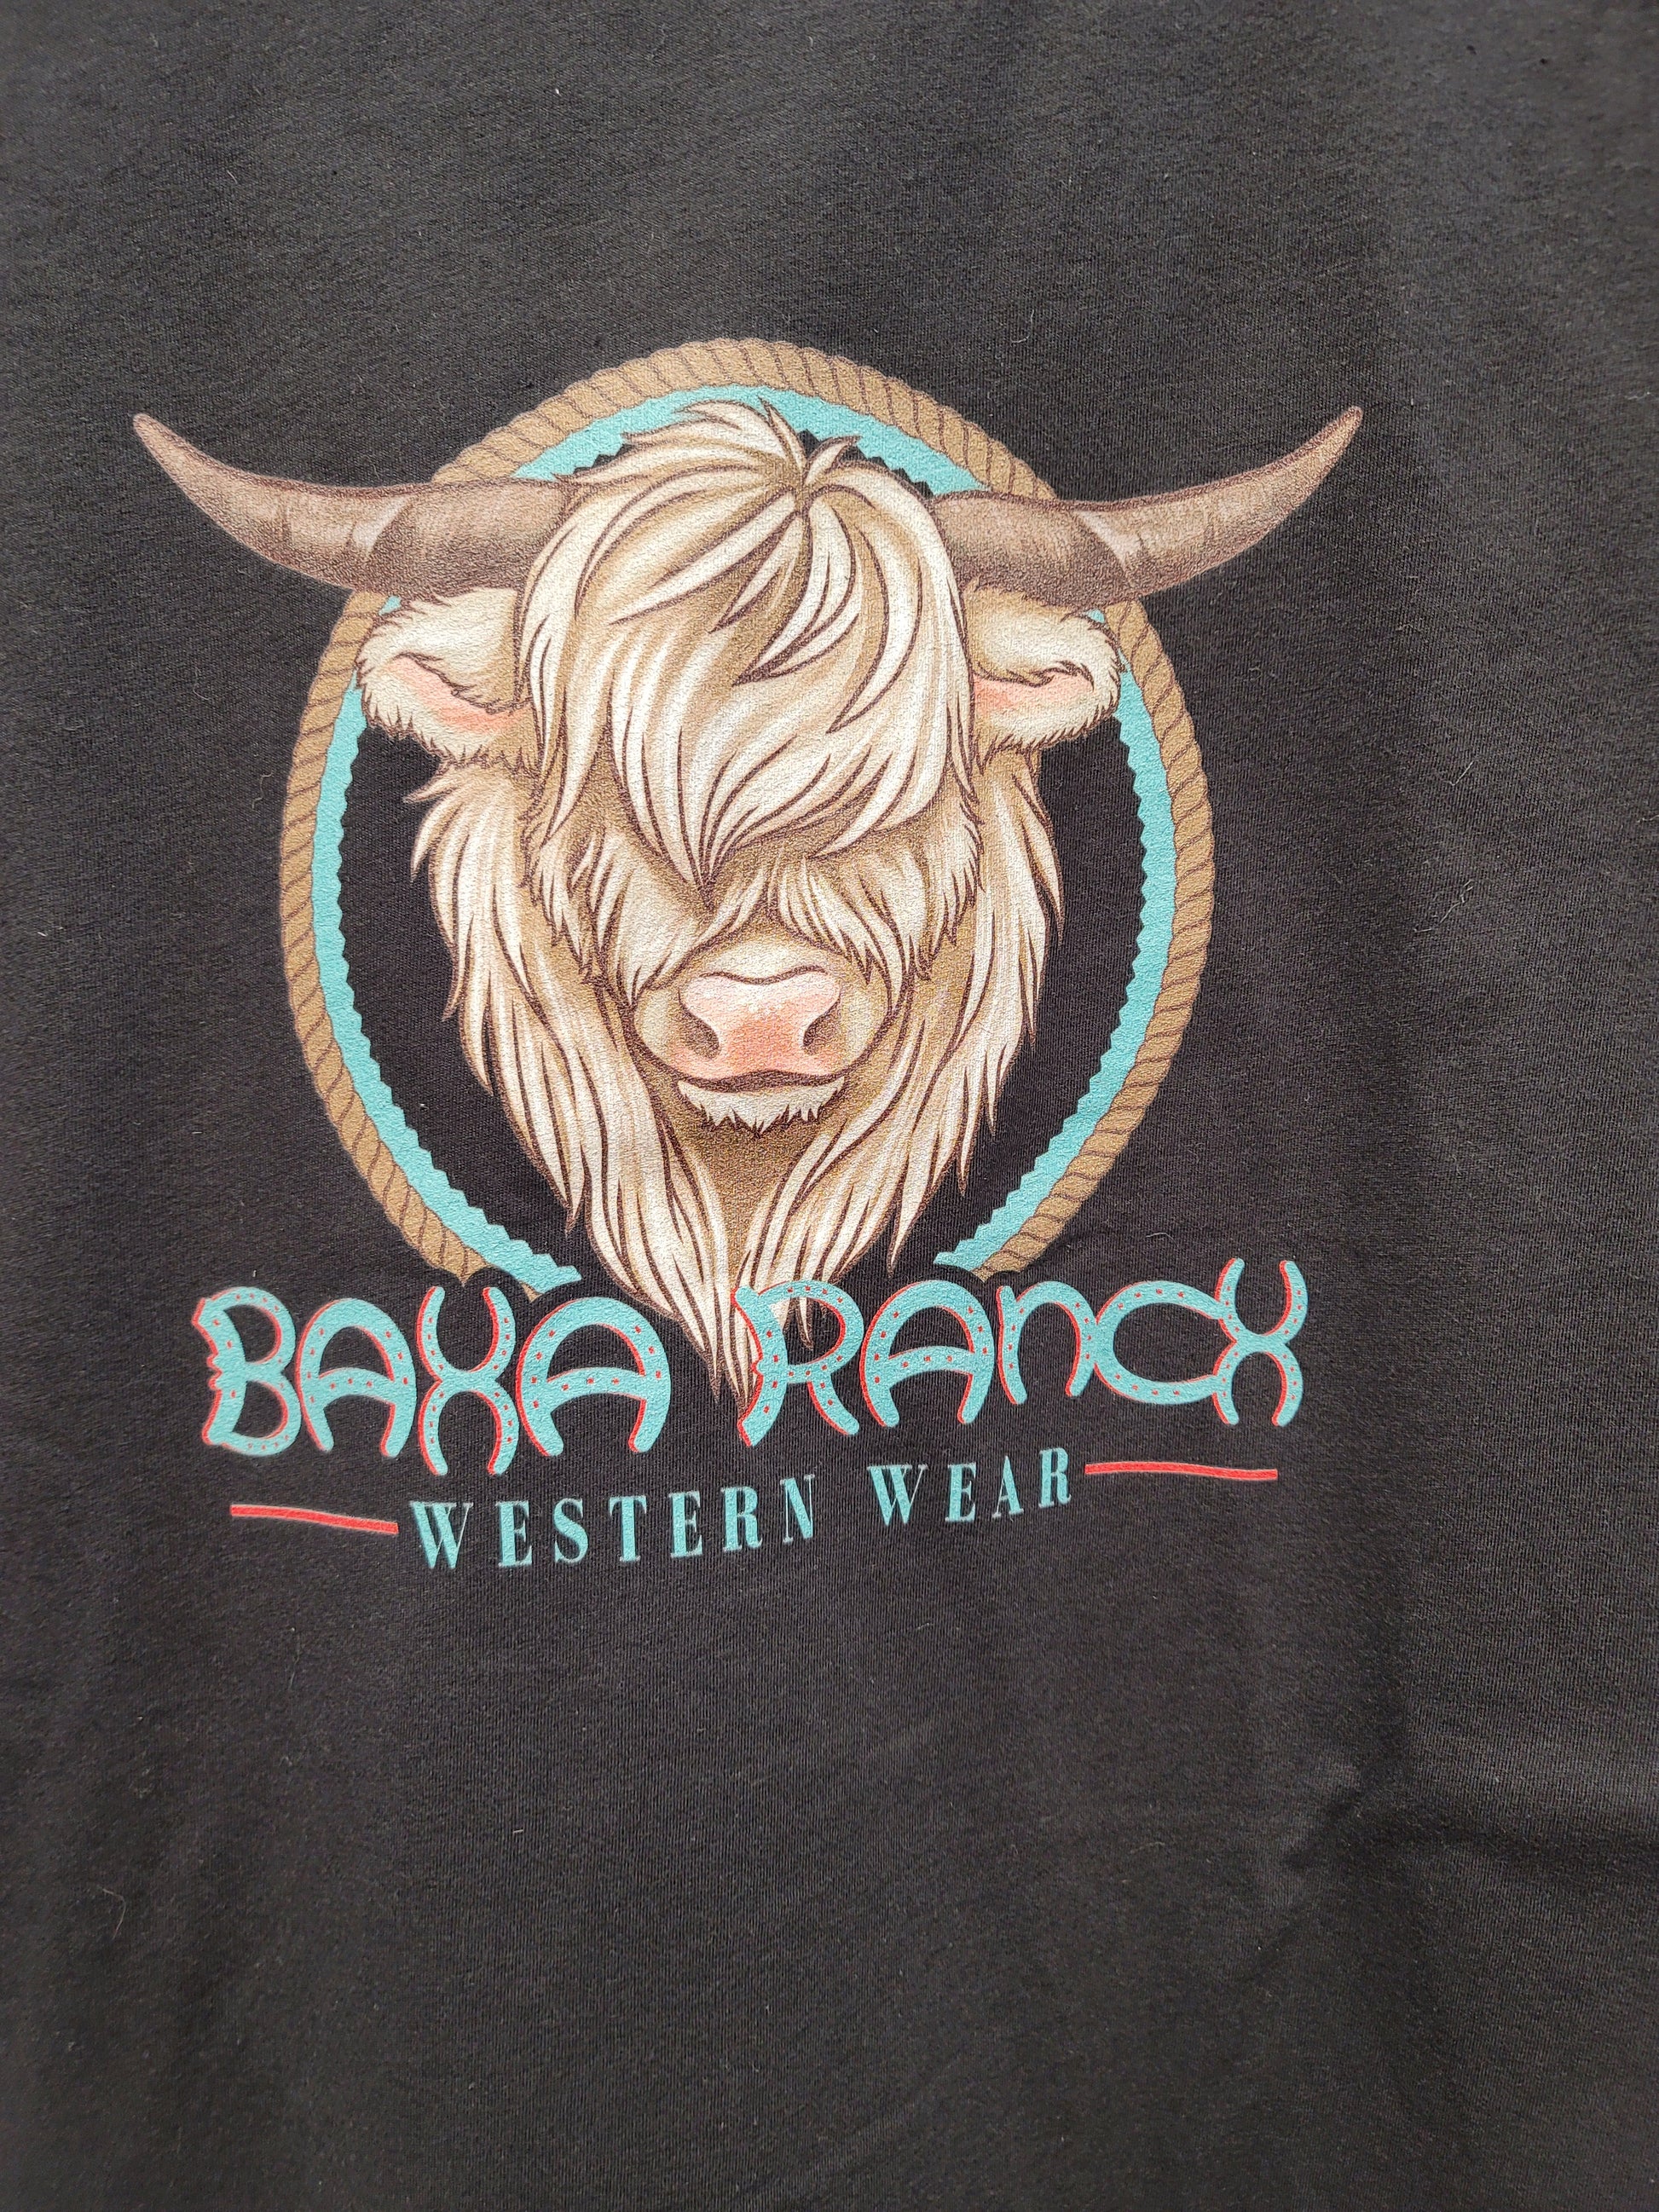 Baha Ranch Highland Cow Tee - baha, baha ranch, baha ranch logo, black, black tee, cowboy, cowgirl, graphic, graphic tee, highland, highland cow, highland cows, highlandcows, highlander, highlands, southwestern, tee, tee shirt, tshirt, western -  - Baha Ranch Western Wear